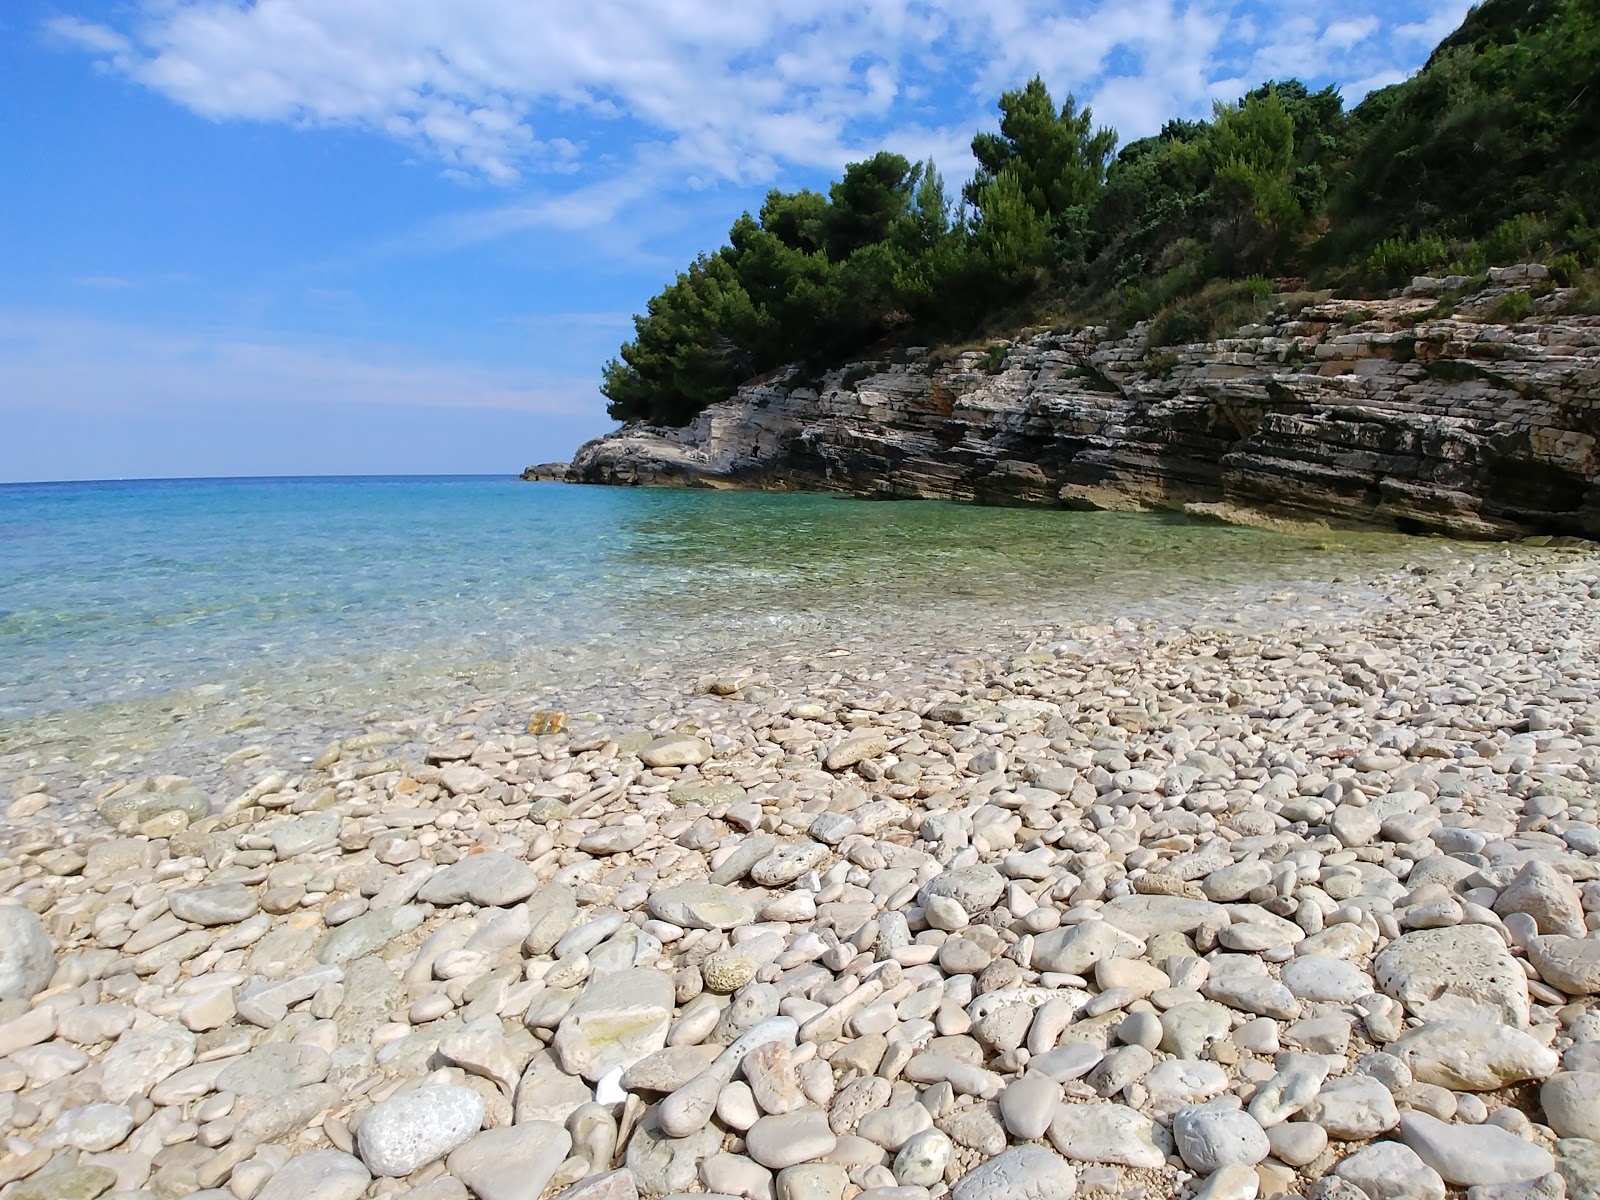 Fotografie cu Radovica beach - locul popular printre cunoscătorii de relaxare